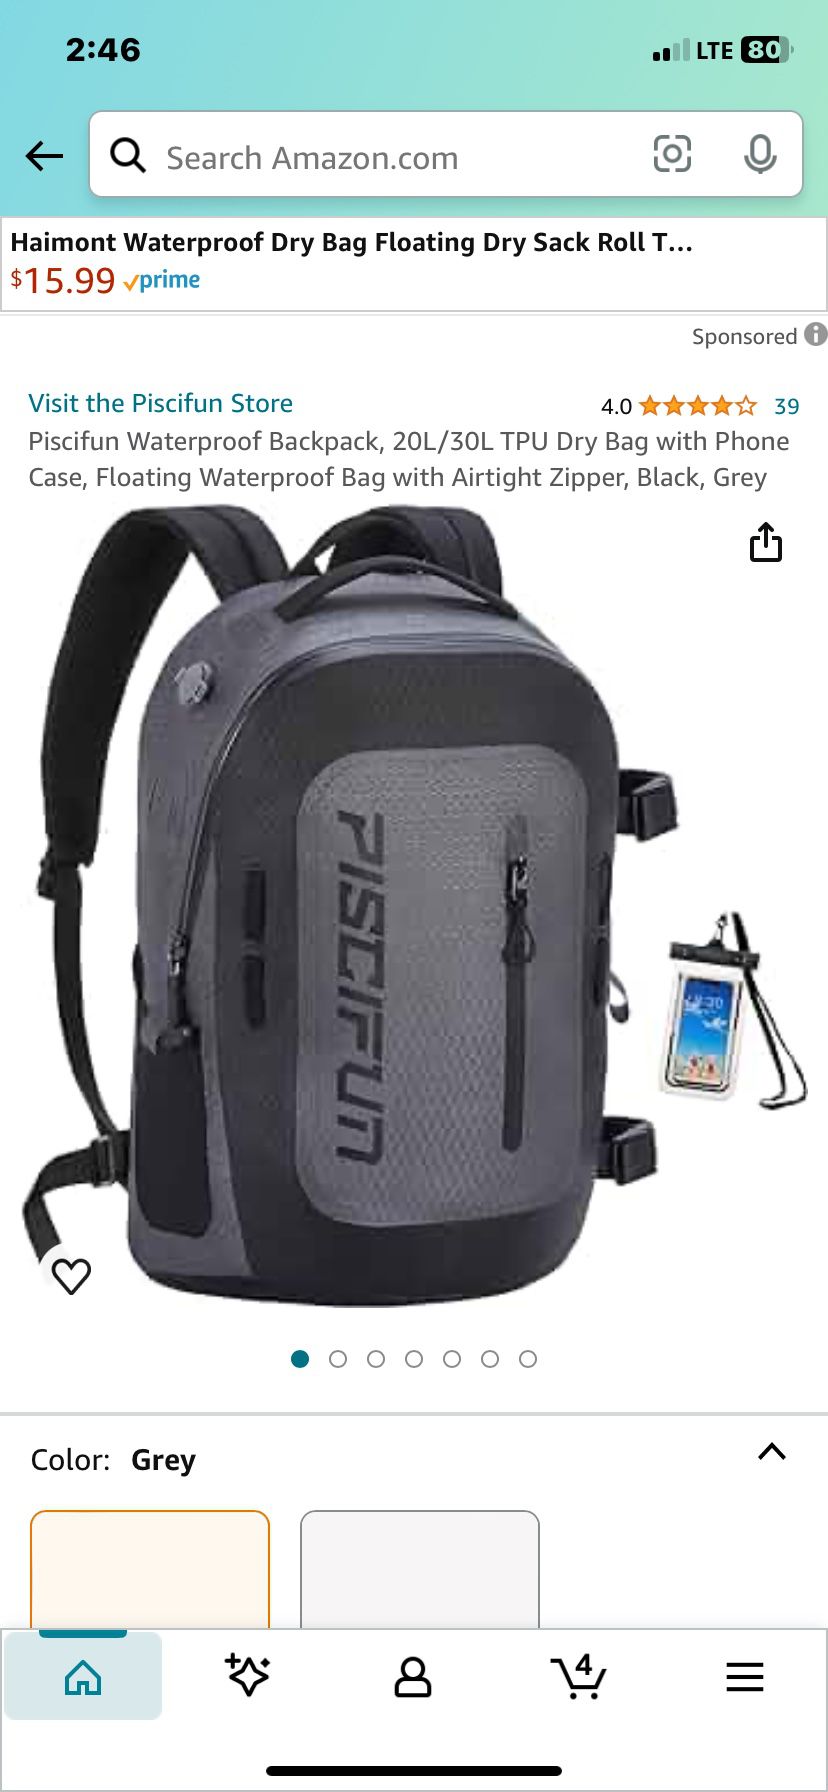 Kings Trek Waterproof Backpack And Phone Holder New In Box Retails $35 Selling $25 